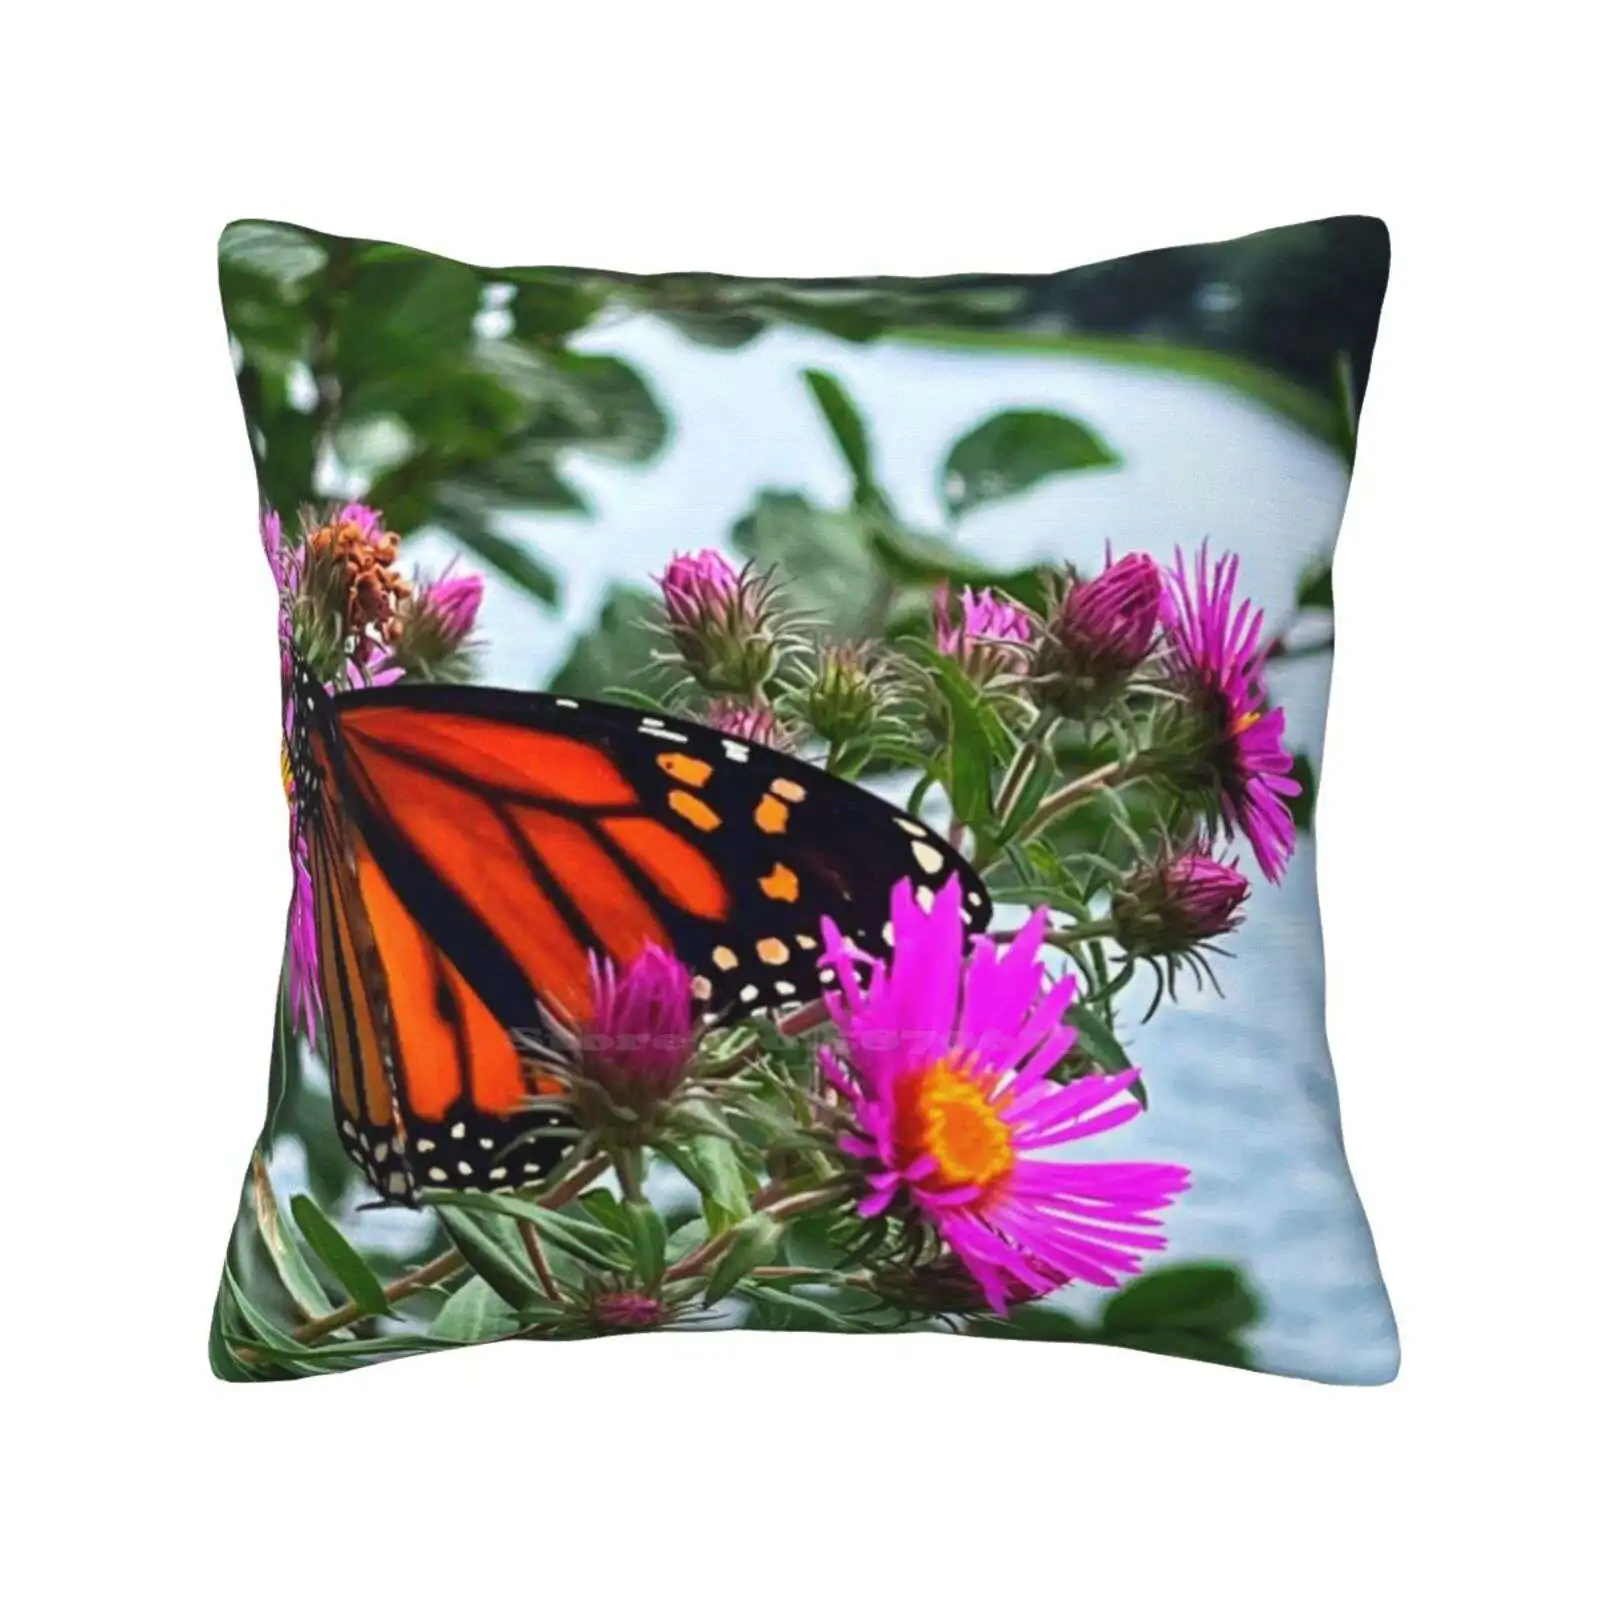 

Наволочка Monarch с цветами для дома, дивана, автомобиля, на талию, осень, природа, изучение красочных цветов, цветы монара, лето, темный Муди